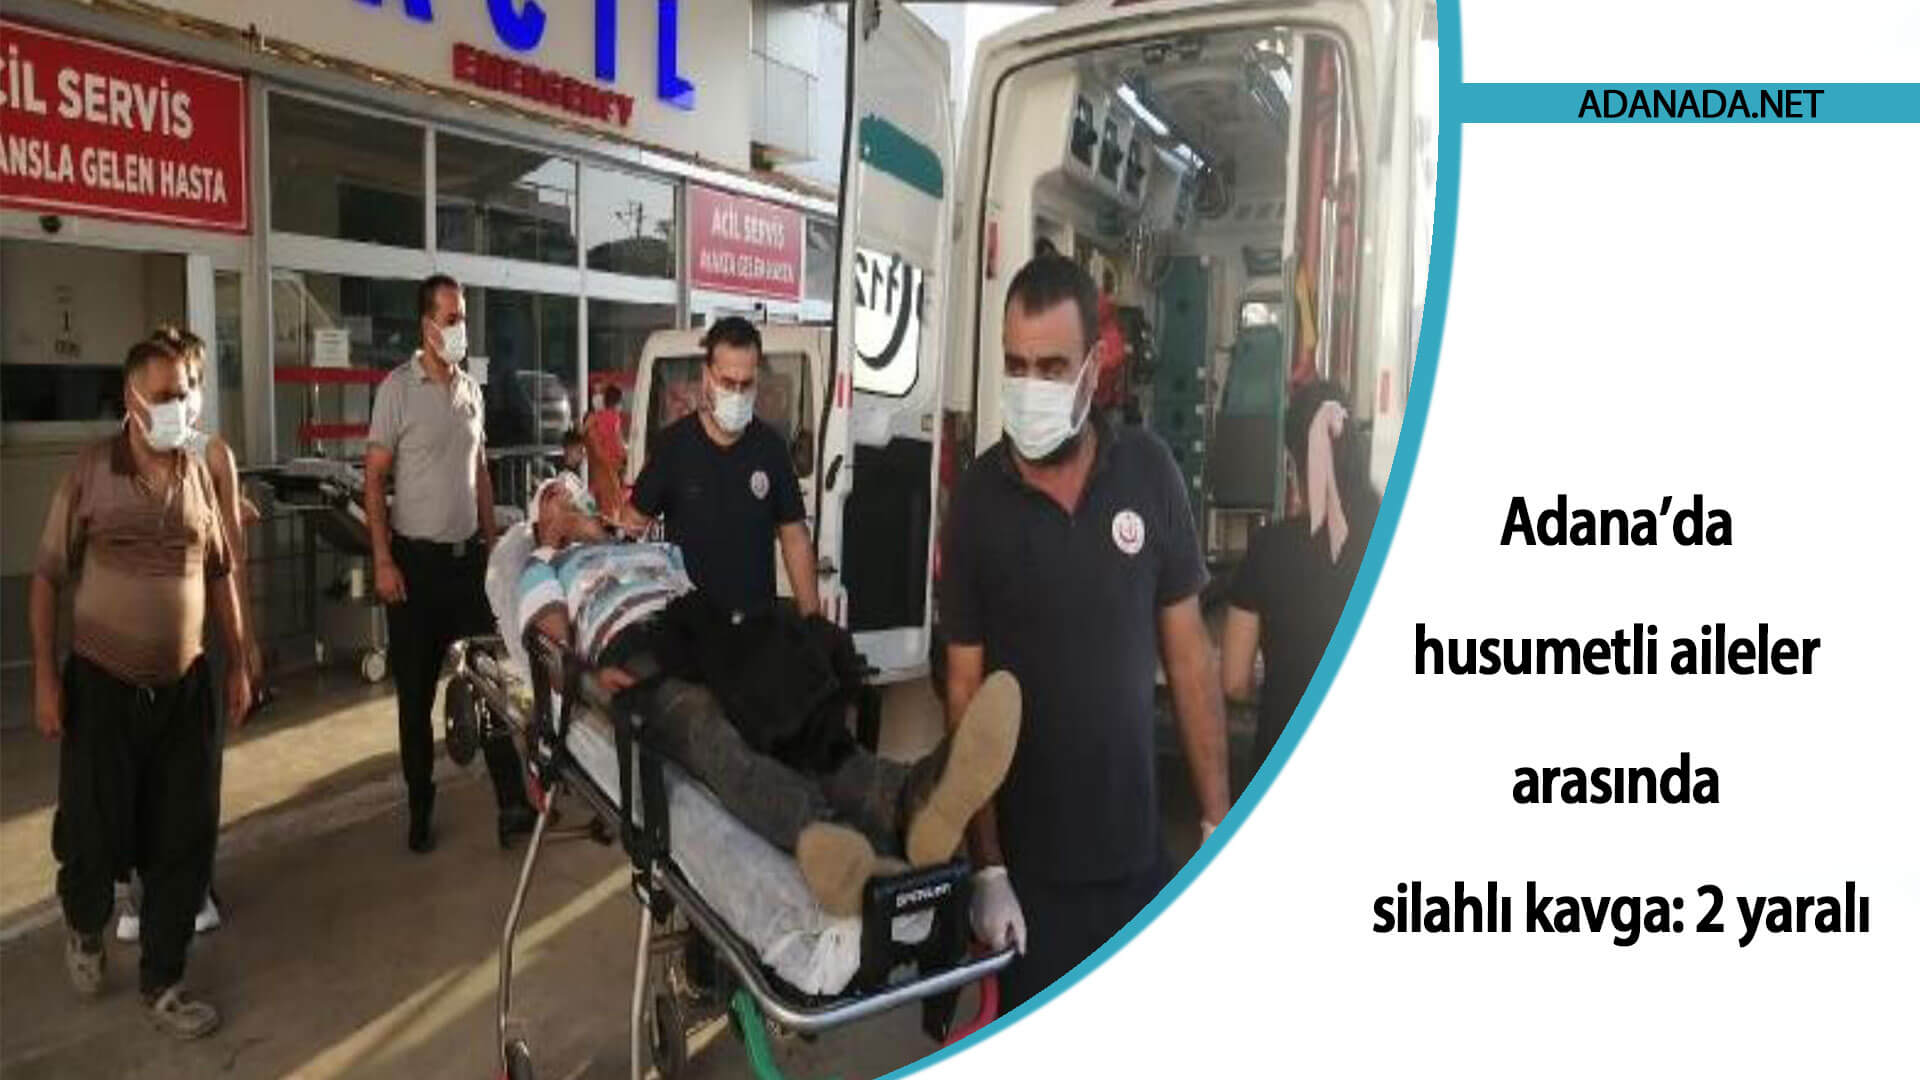 Adana’da husumetli aileler arasında silahlı kavga: 2 yaralı